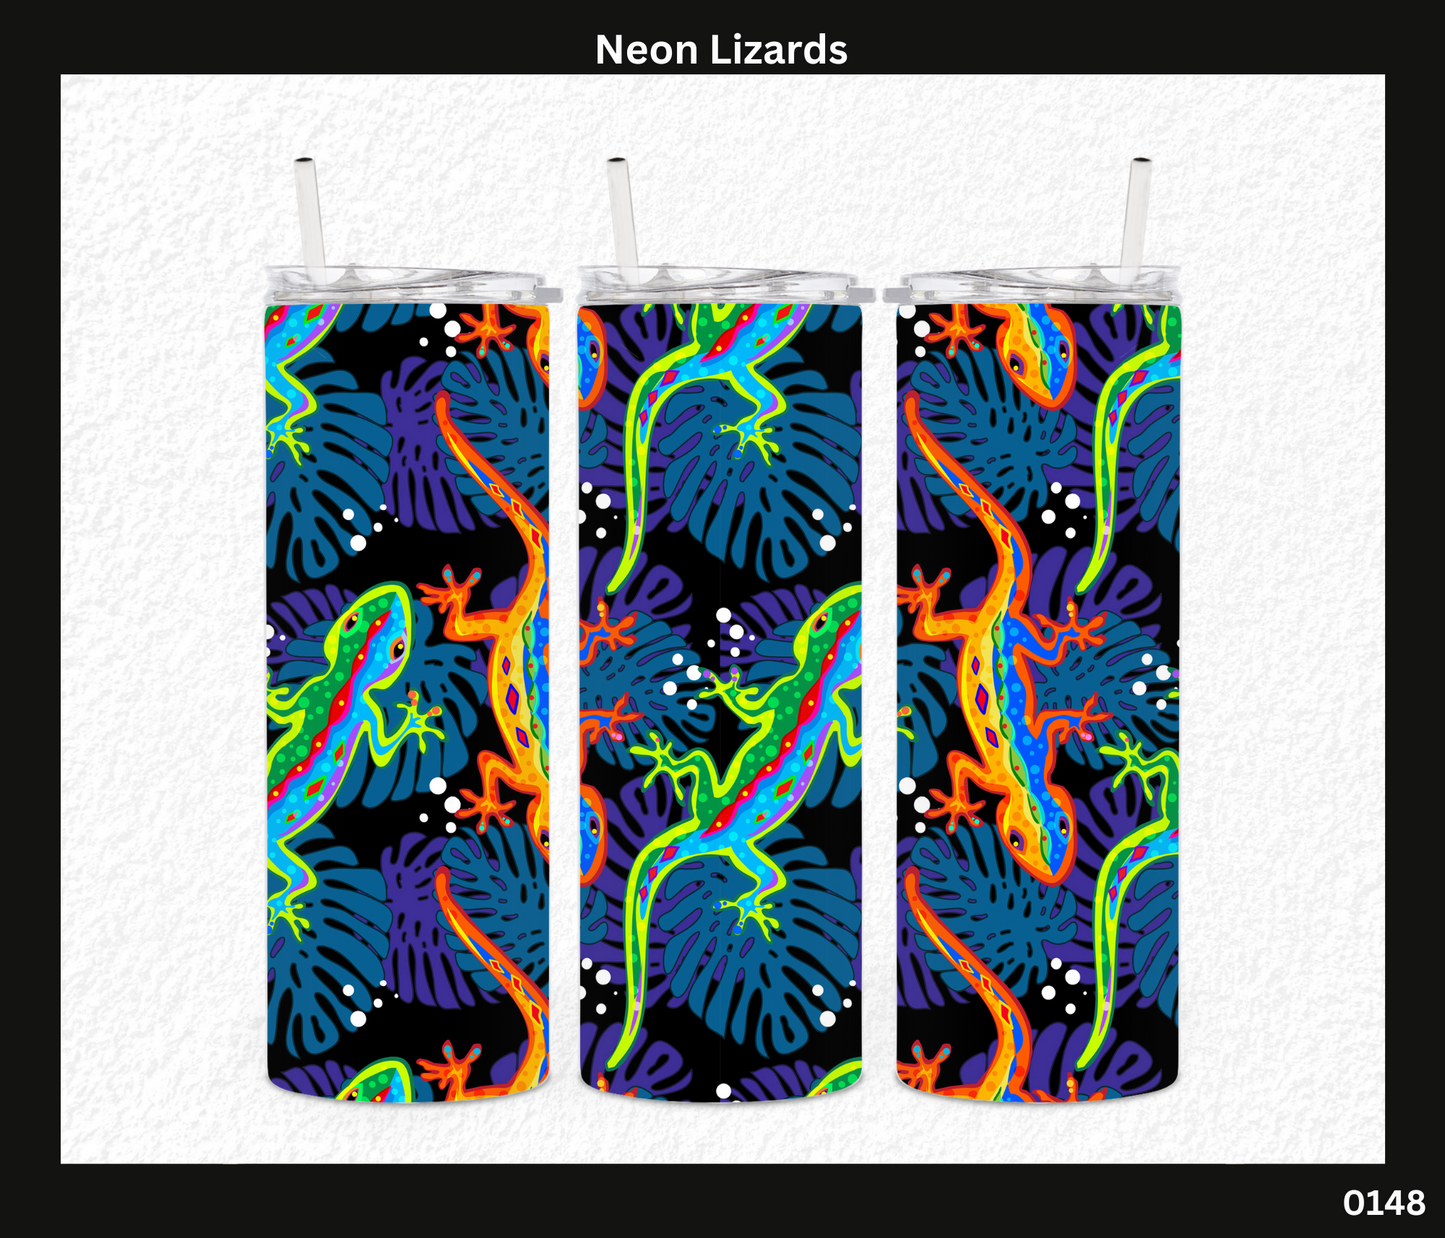 Neon Lizards